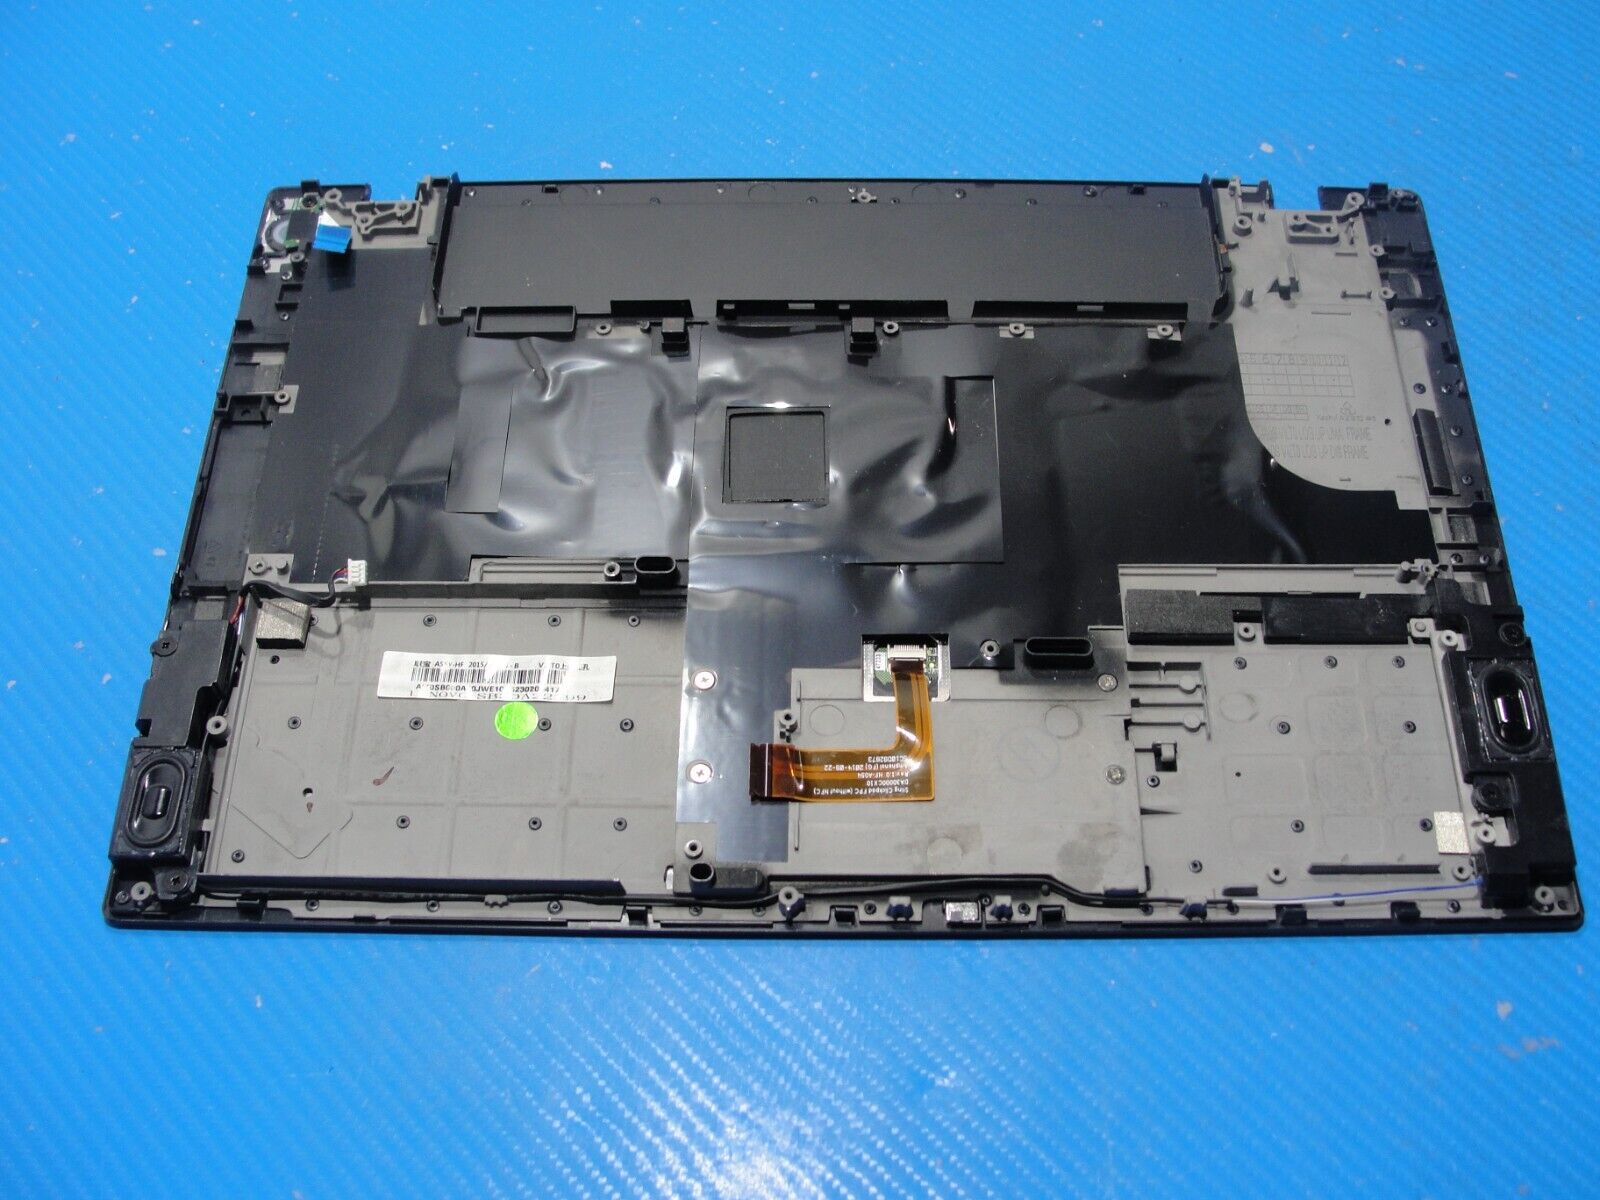 Lenovo ThinkPad T440s 14